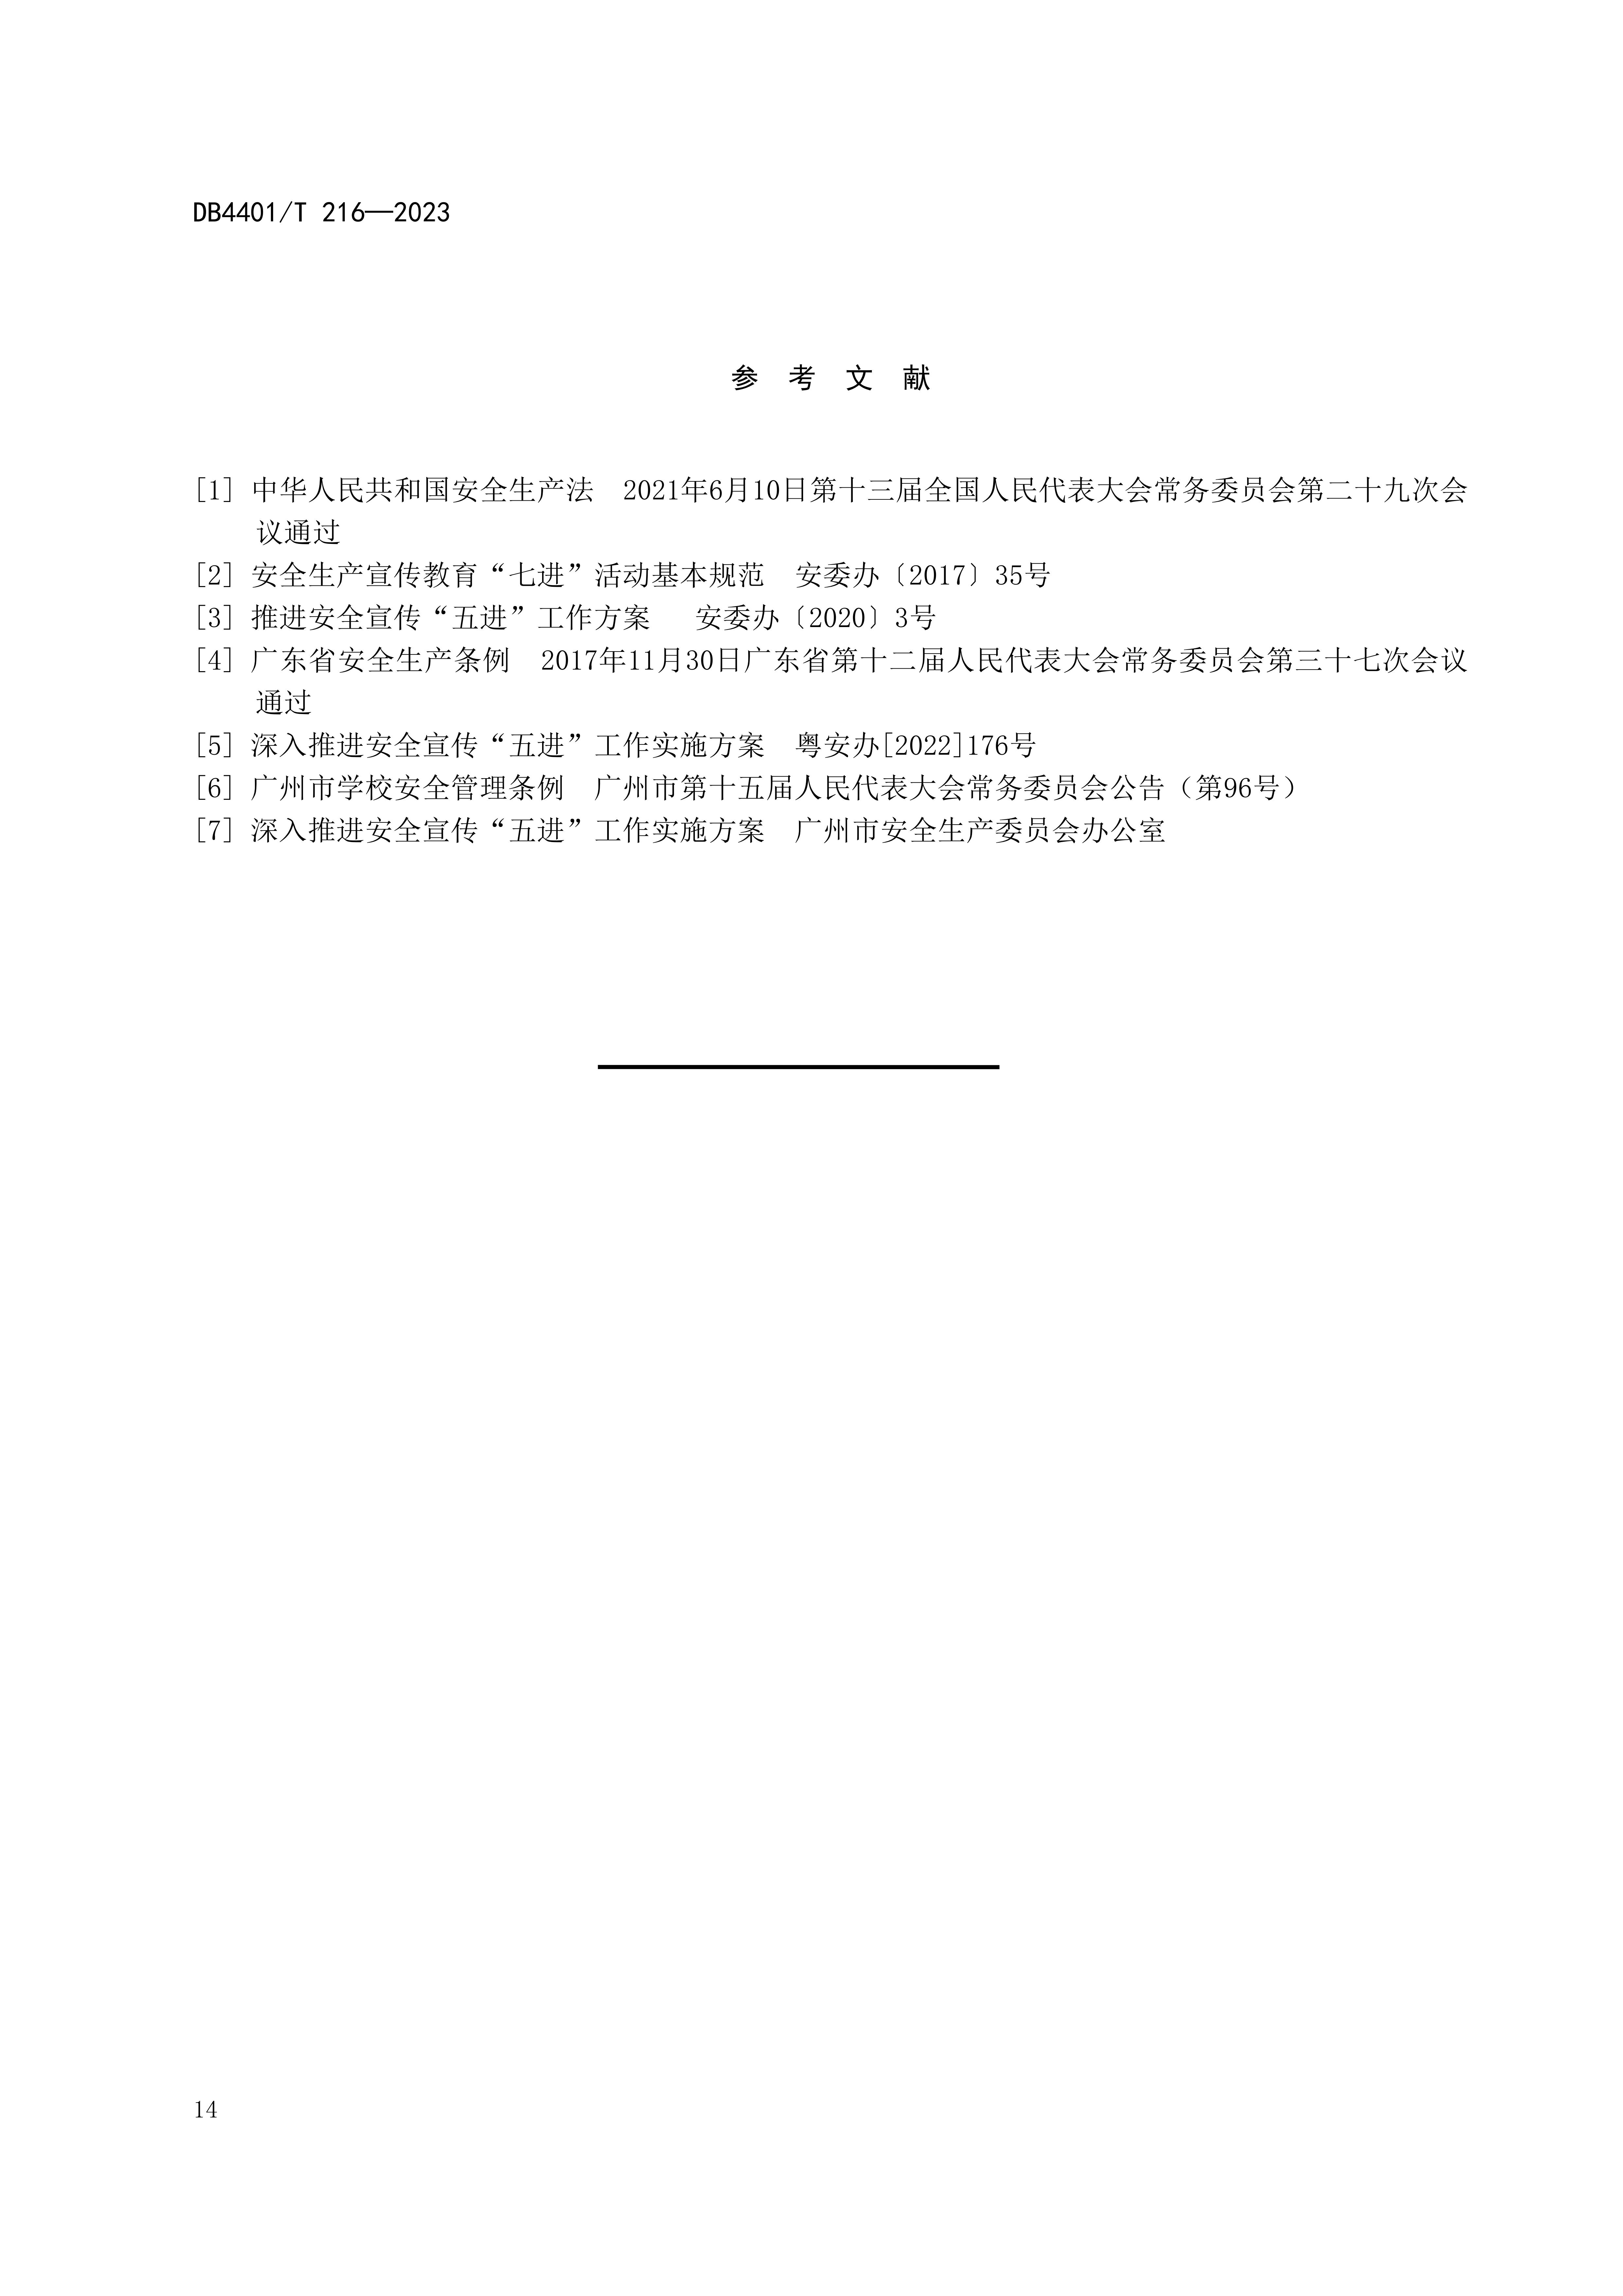 (终稿 发布稿)广州市地方标准《安全宣传“五进”工作规范》20230625_19.jpg